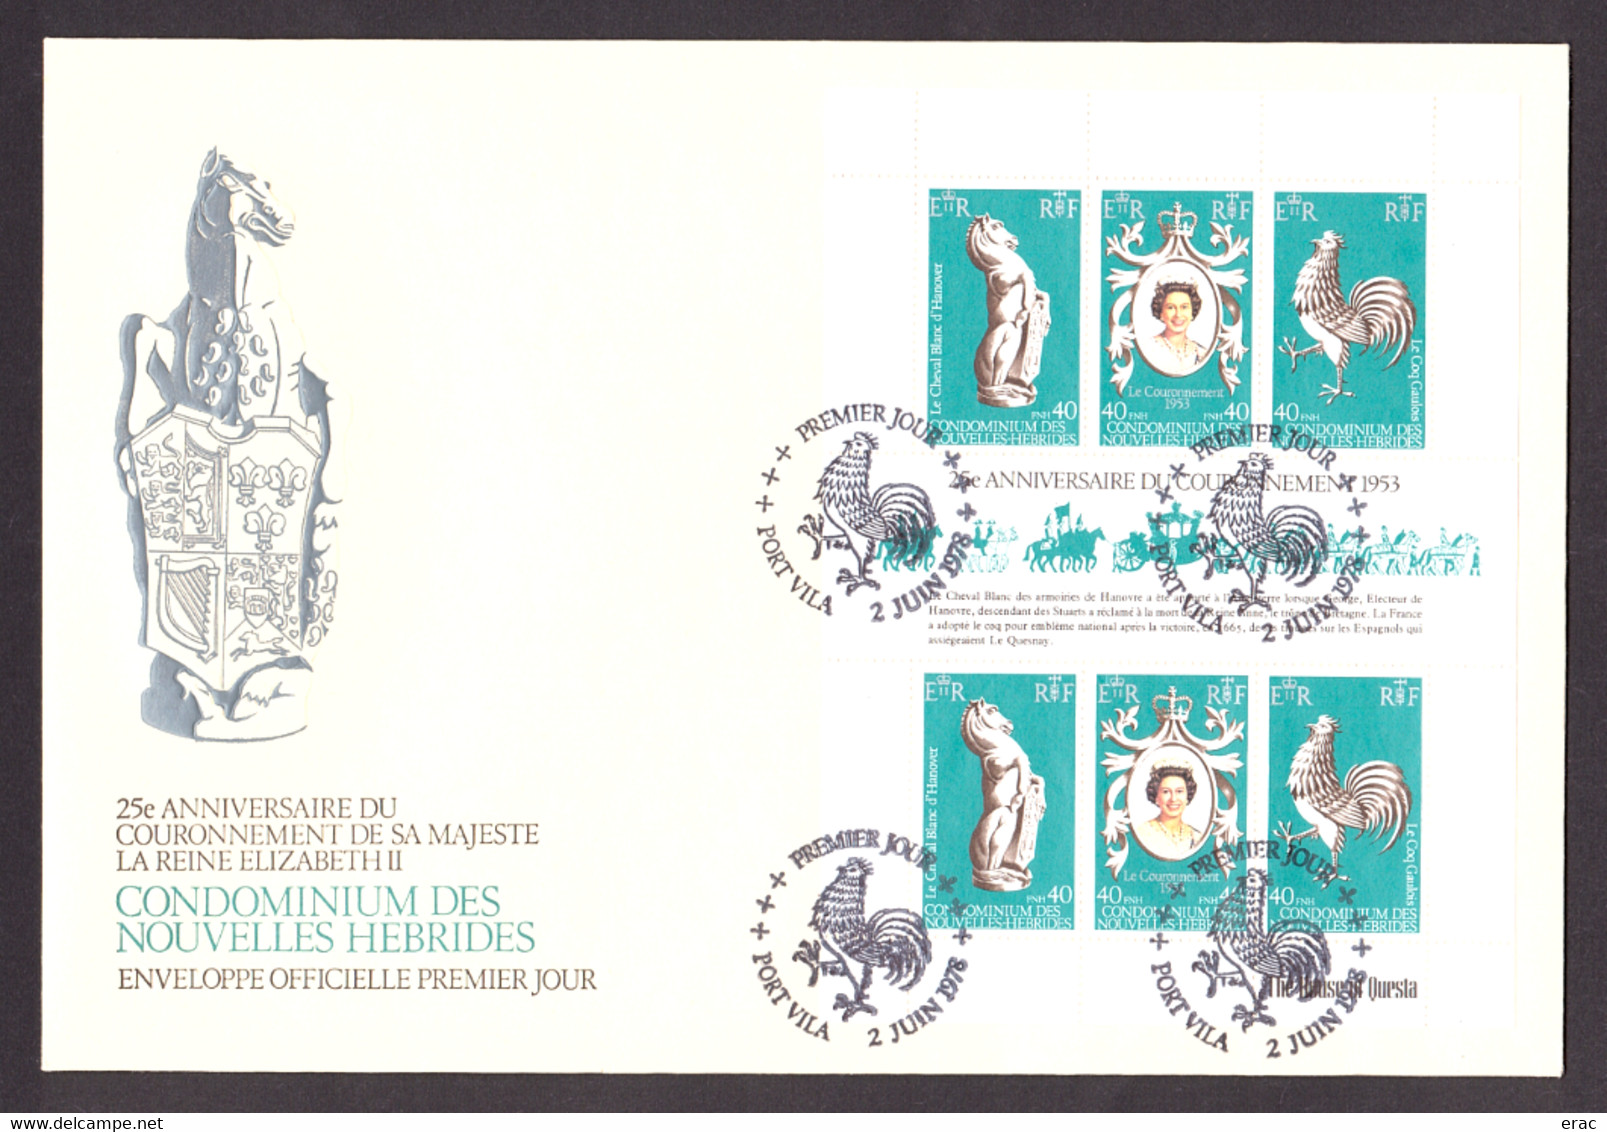 Nouvelles-Hébrides - Enveloppe Officielle 1er Jour - BF 1 - 25 Ans Couronnement Elisabeth II - Covers & Documents